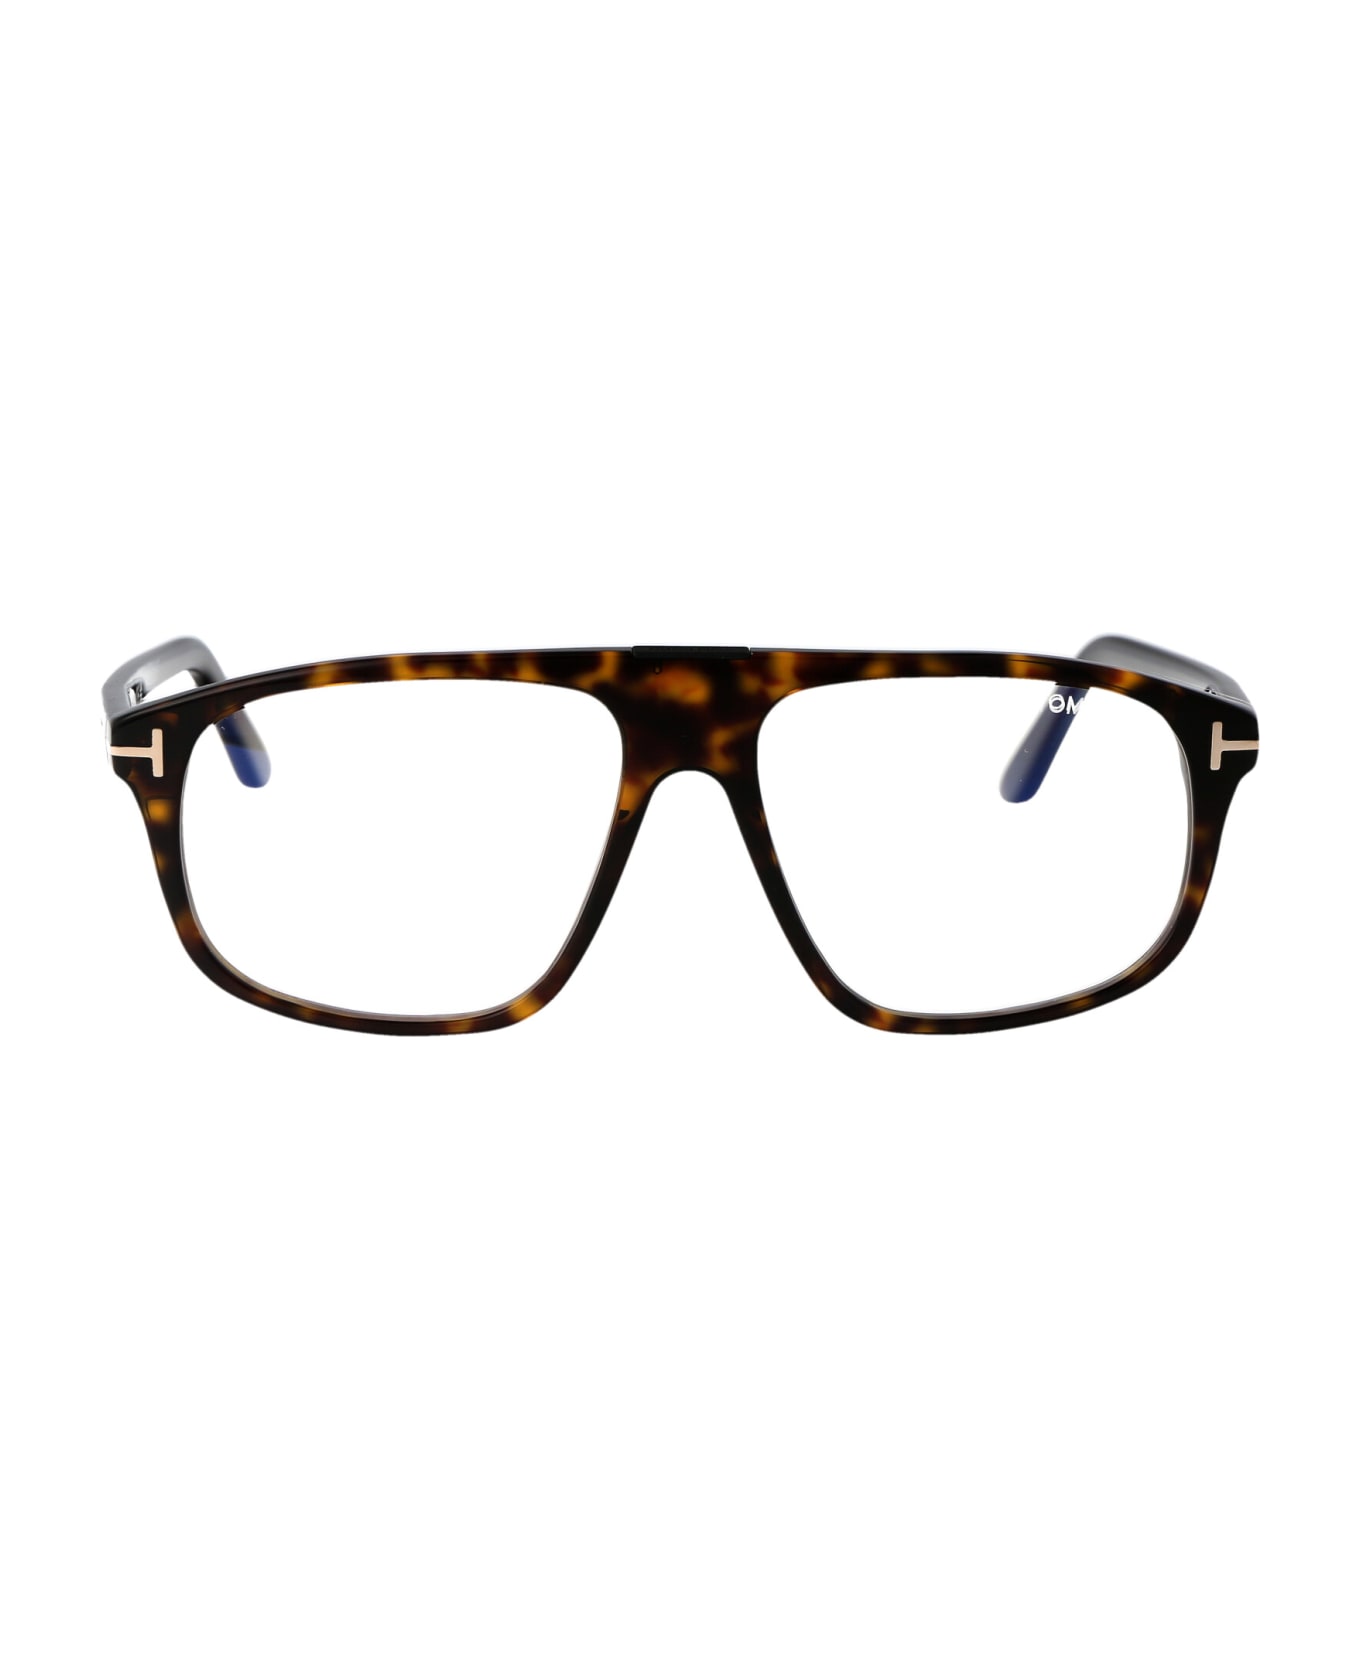 Tom Ford Eyewear Ft5901-b Glasses - 052 Avana Scura